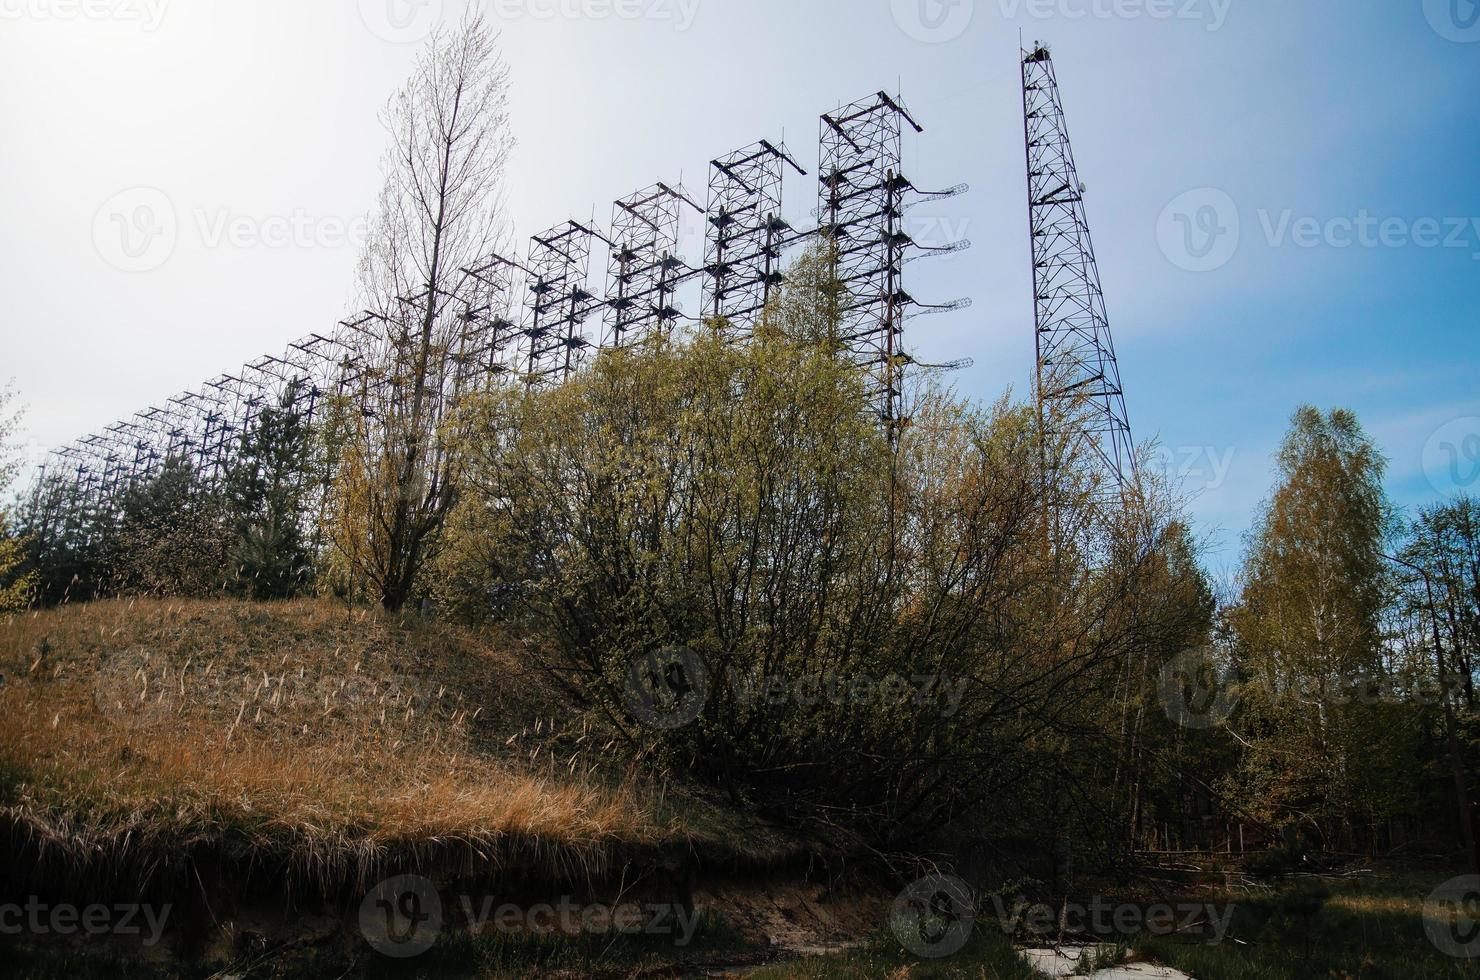 radar soviétique duga 3 près de la ville fantôme de tchernobyl en ukraine. photo